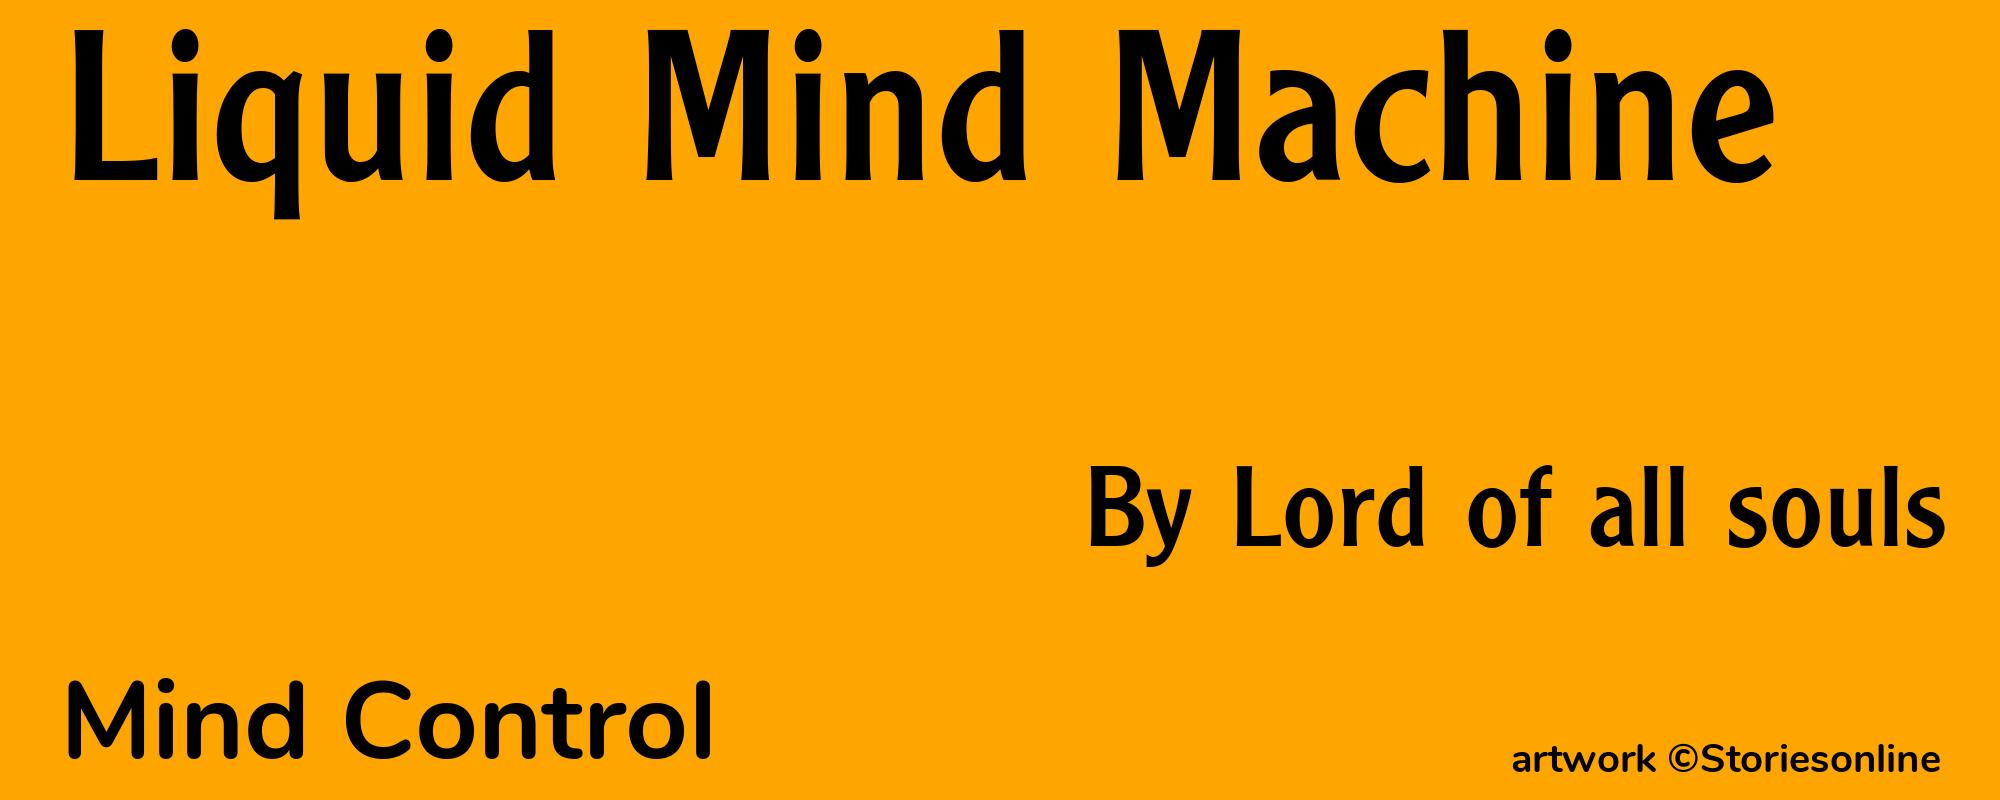 Liquid Mind Machine - Cover